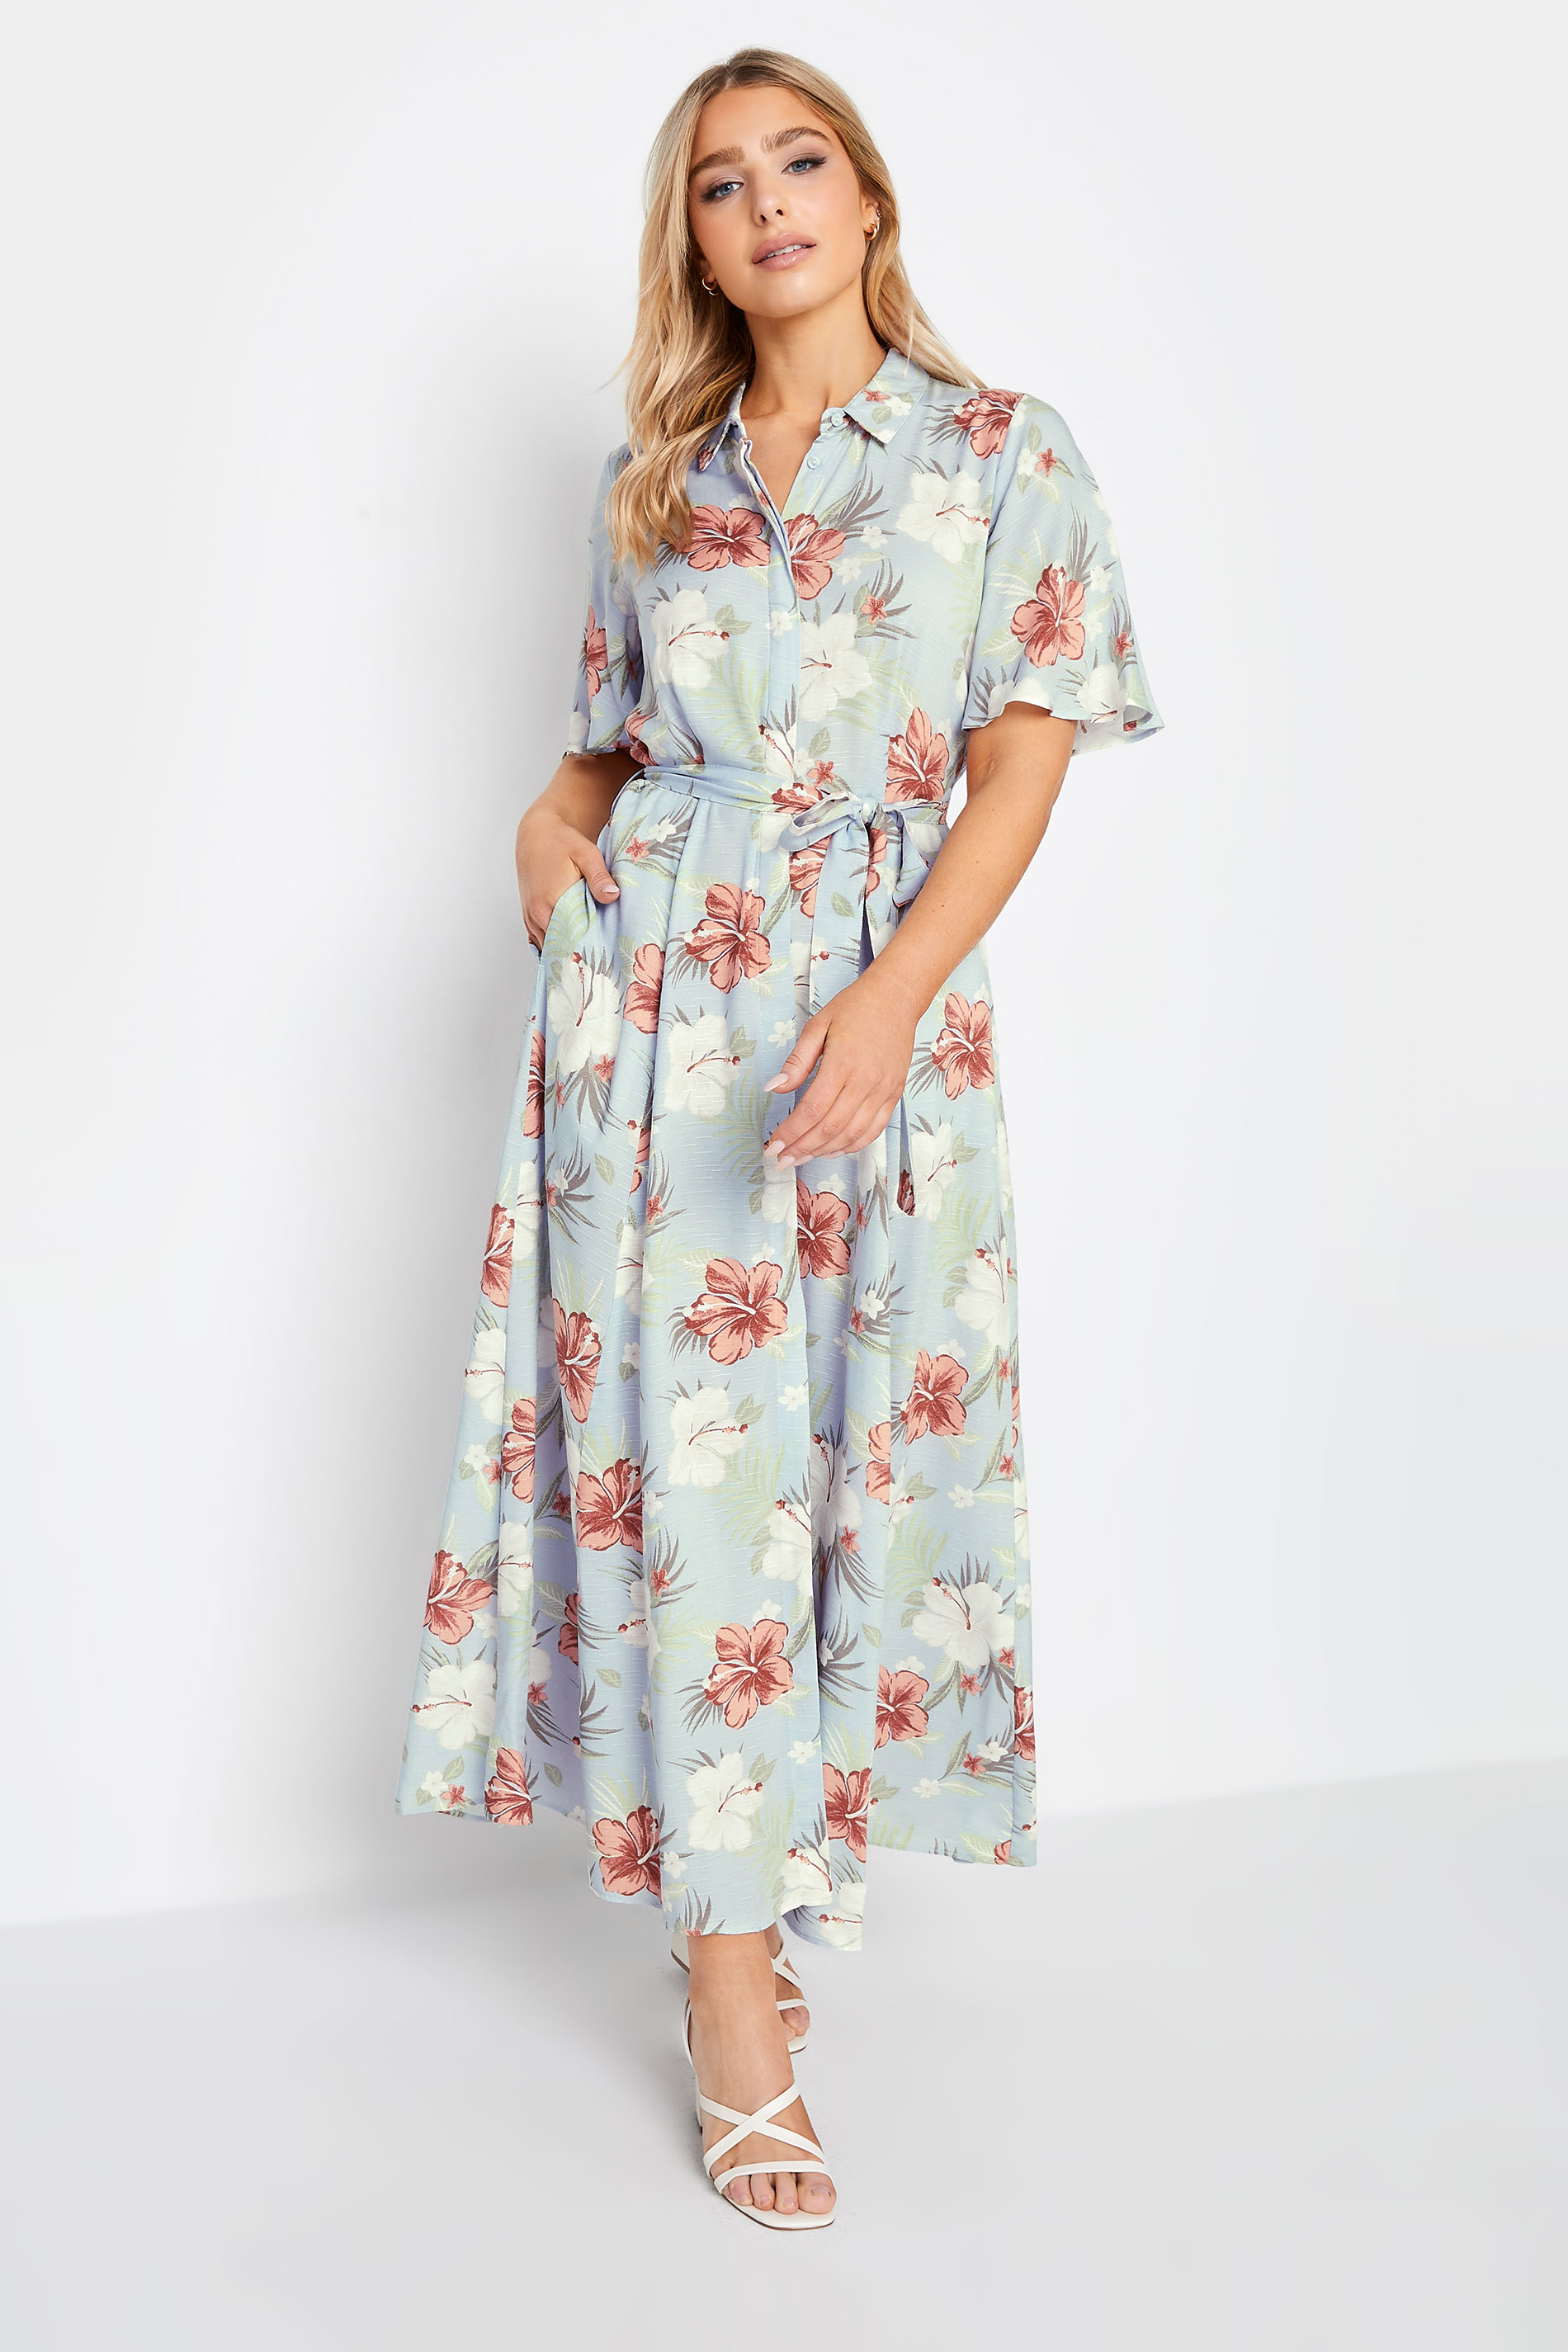 M&Co Blue Floral Print Shirt Dress | M&Co 1